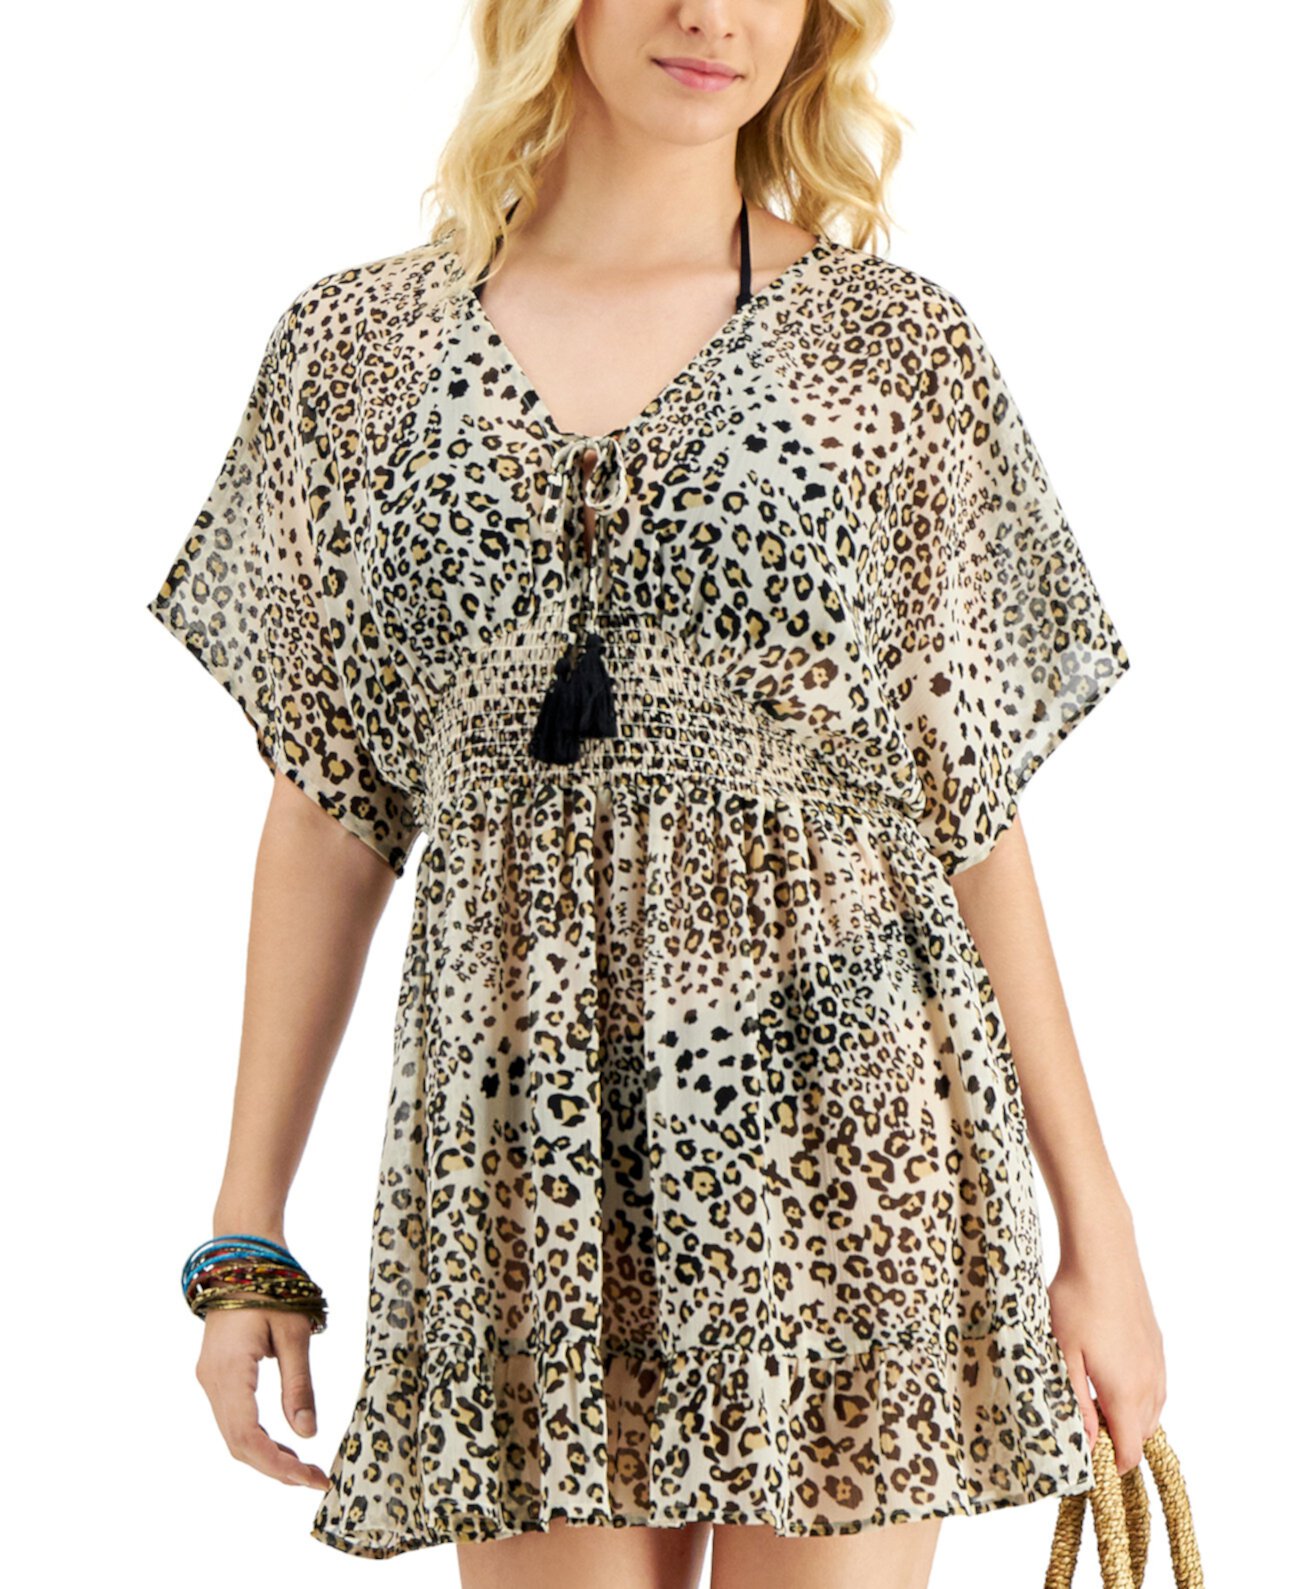 Платье-накидка с принтом гепардов для юниоров, созданное для Macy's Miken